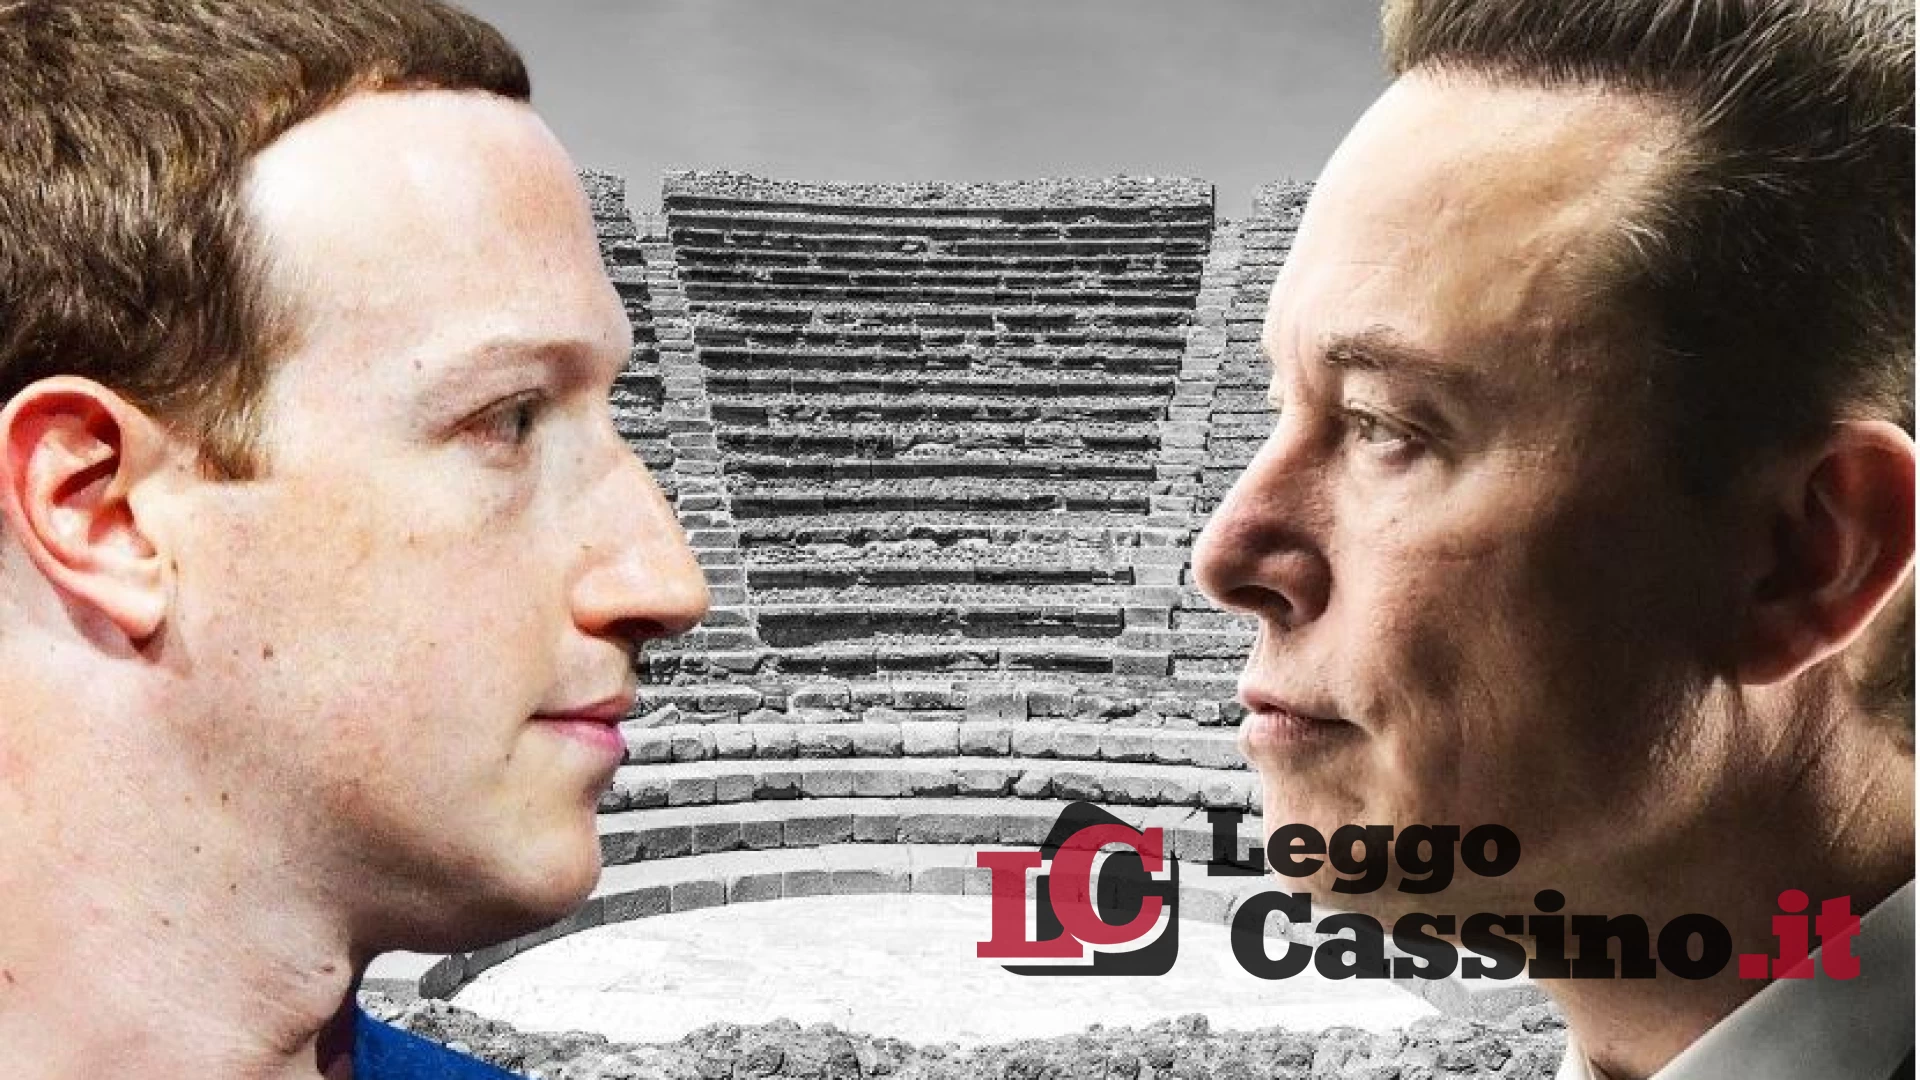 La sfida tra Musk e Zuckerberg? All'anfiteatro romano di Cassino